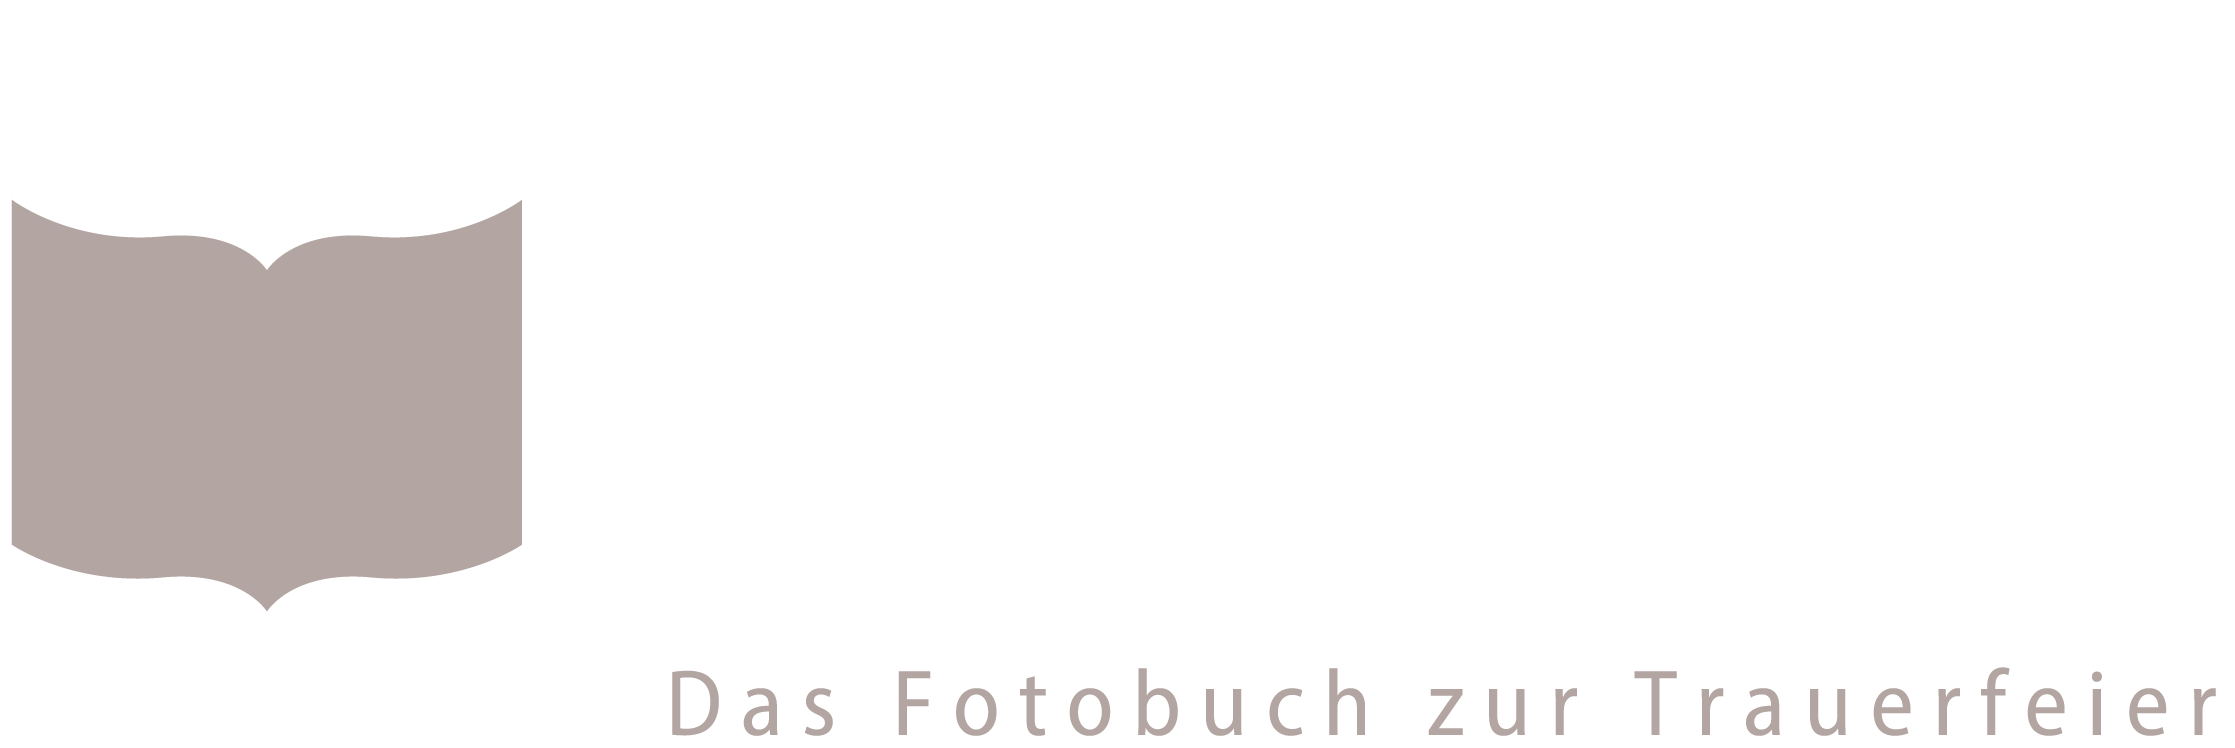 Logo Memorius - Das Fotobuch zur Trauerfeier. Fotodruck für Bestatter und Beerdigungsinstitute von Beerdigungen und Abschiednahmen.